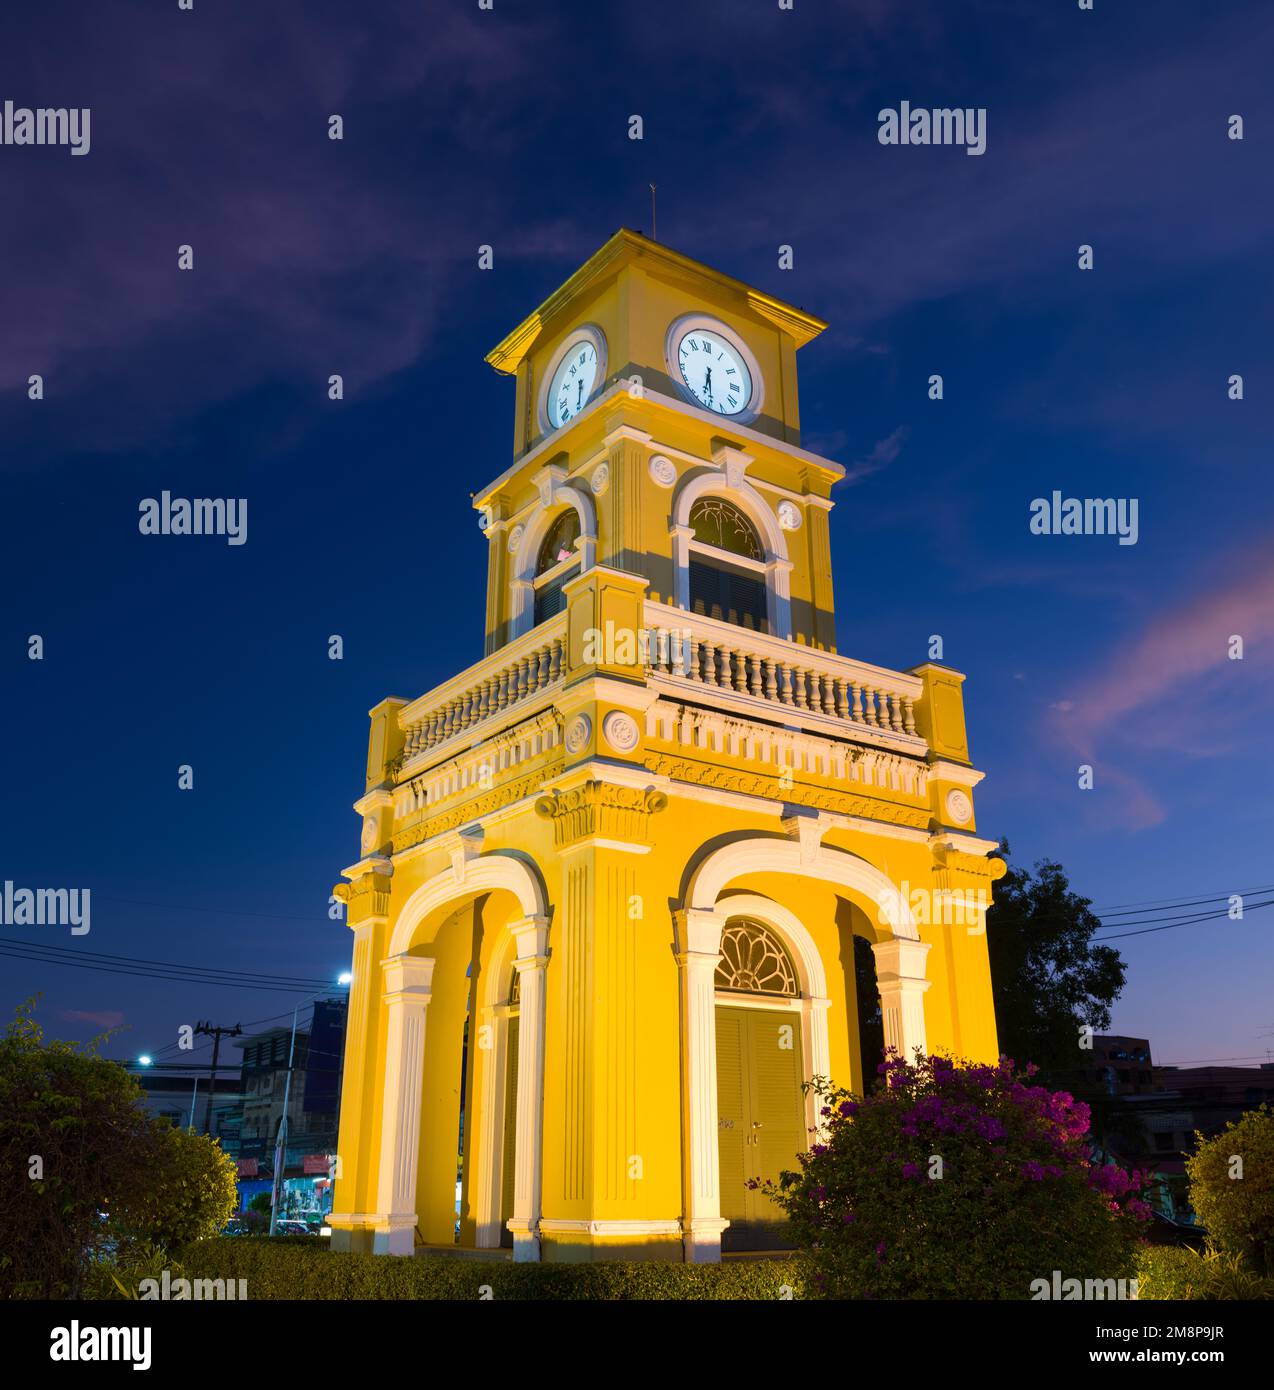 Città vecchia di Phuket. Famoso edificio della torre dell'orologio a sera. Architettura sino-portoghese. Destinazioni di viaggio principali in Thailandia Foto Stock